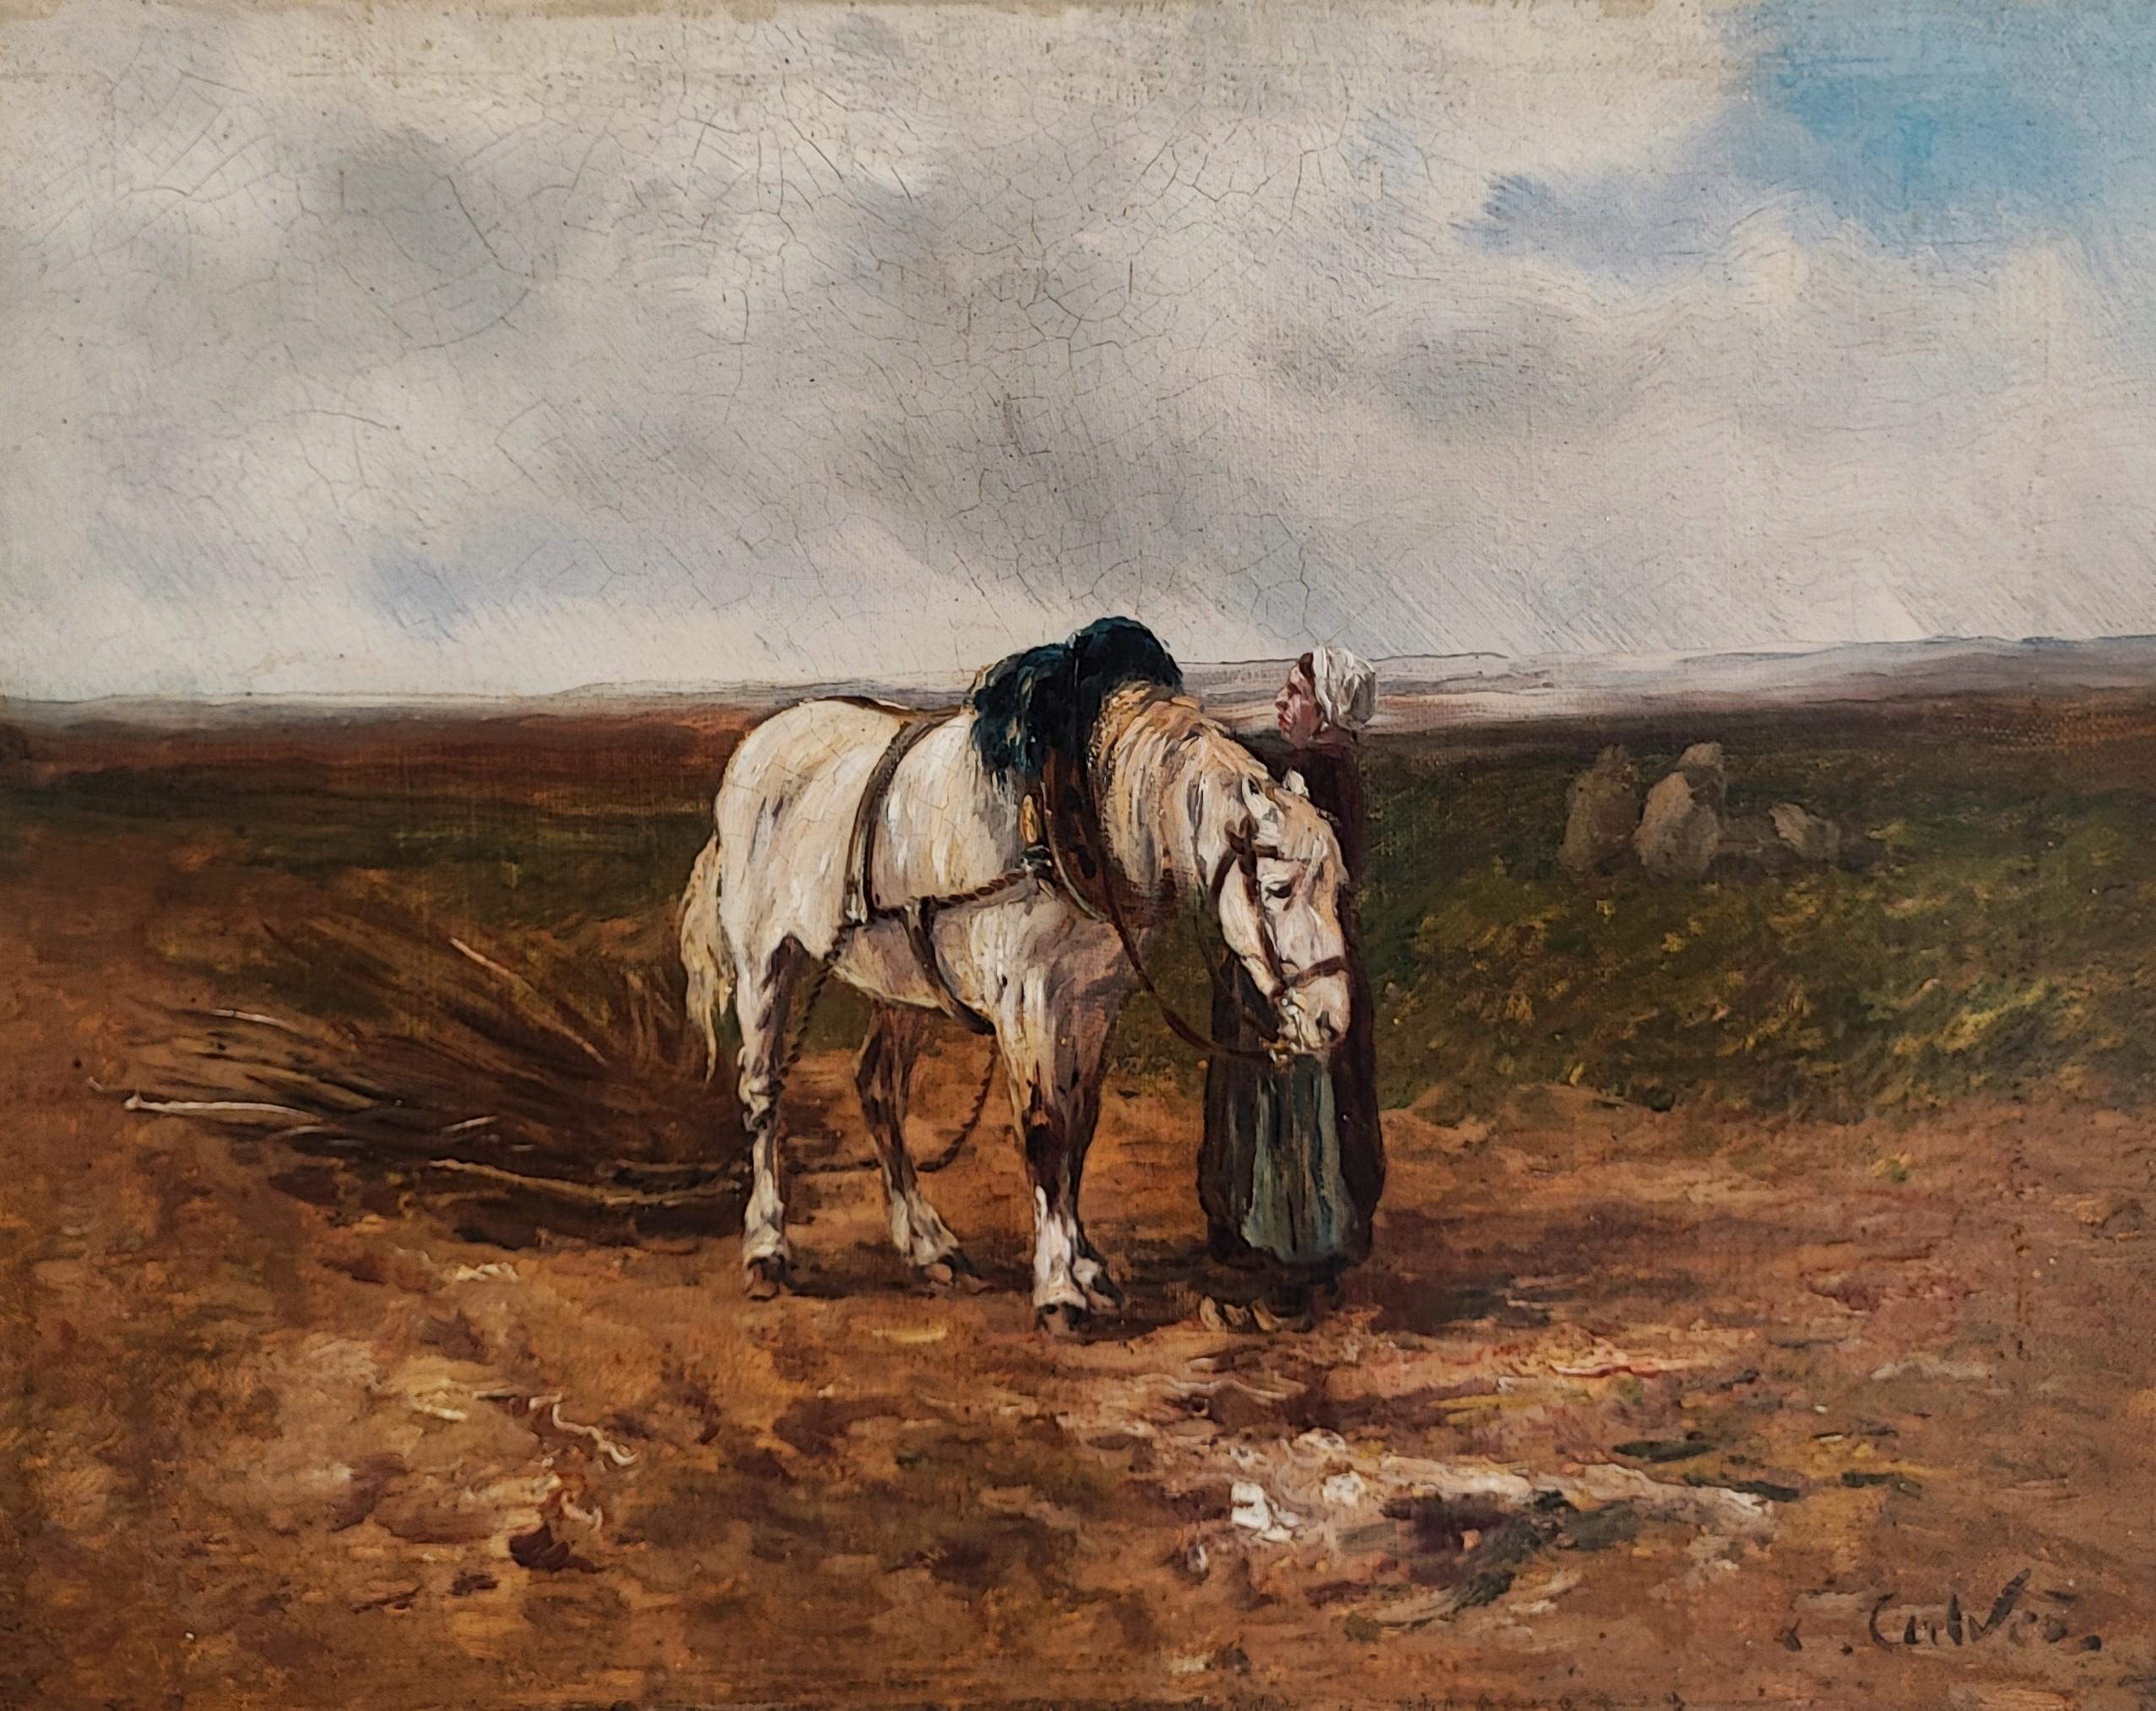 Woman in the field préparation d'un cheval de dessin